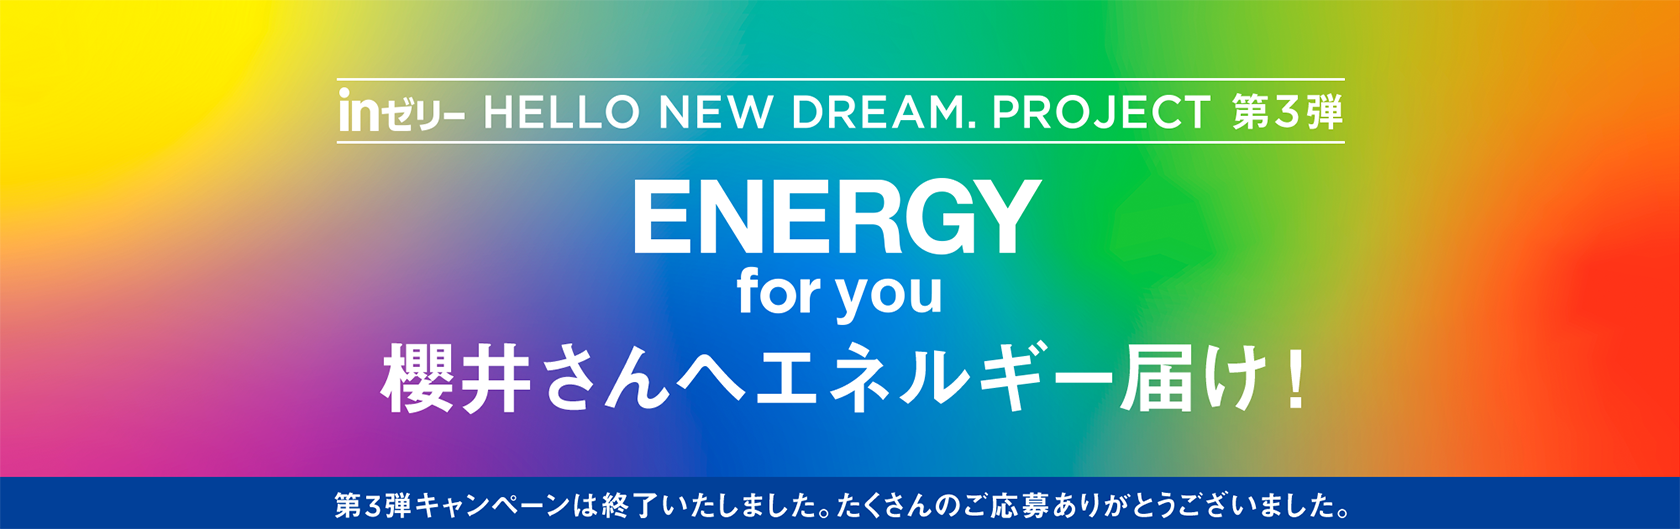 inゼリー HELLO NEW DREAM.PROJECT 第3弾 ENERGY for you 櫻井さんへエネルギー届け！ 第3弾キャンペーンは終了いたしました。たくさんのご応募ありがとうございました。